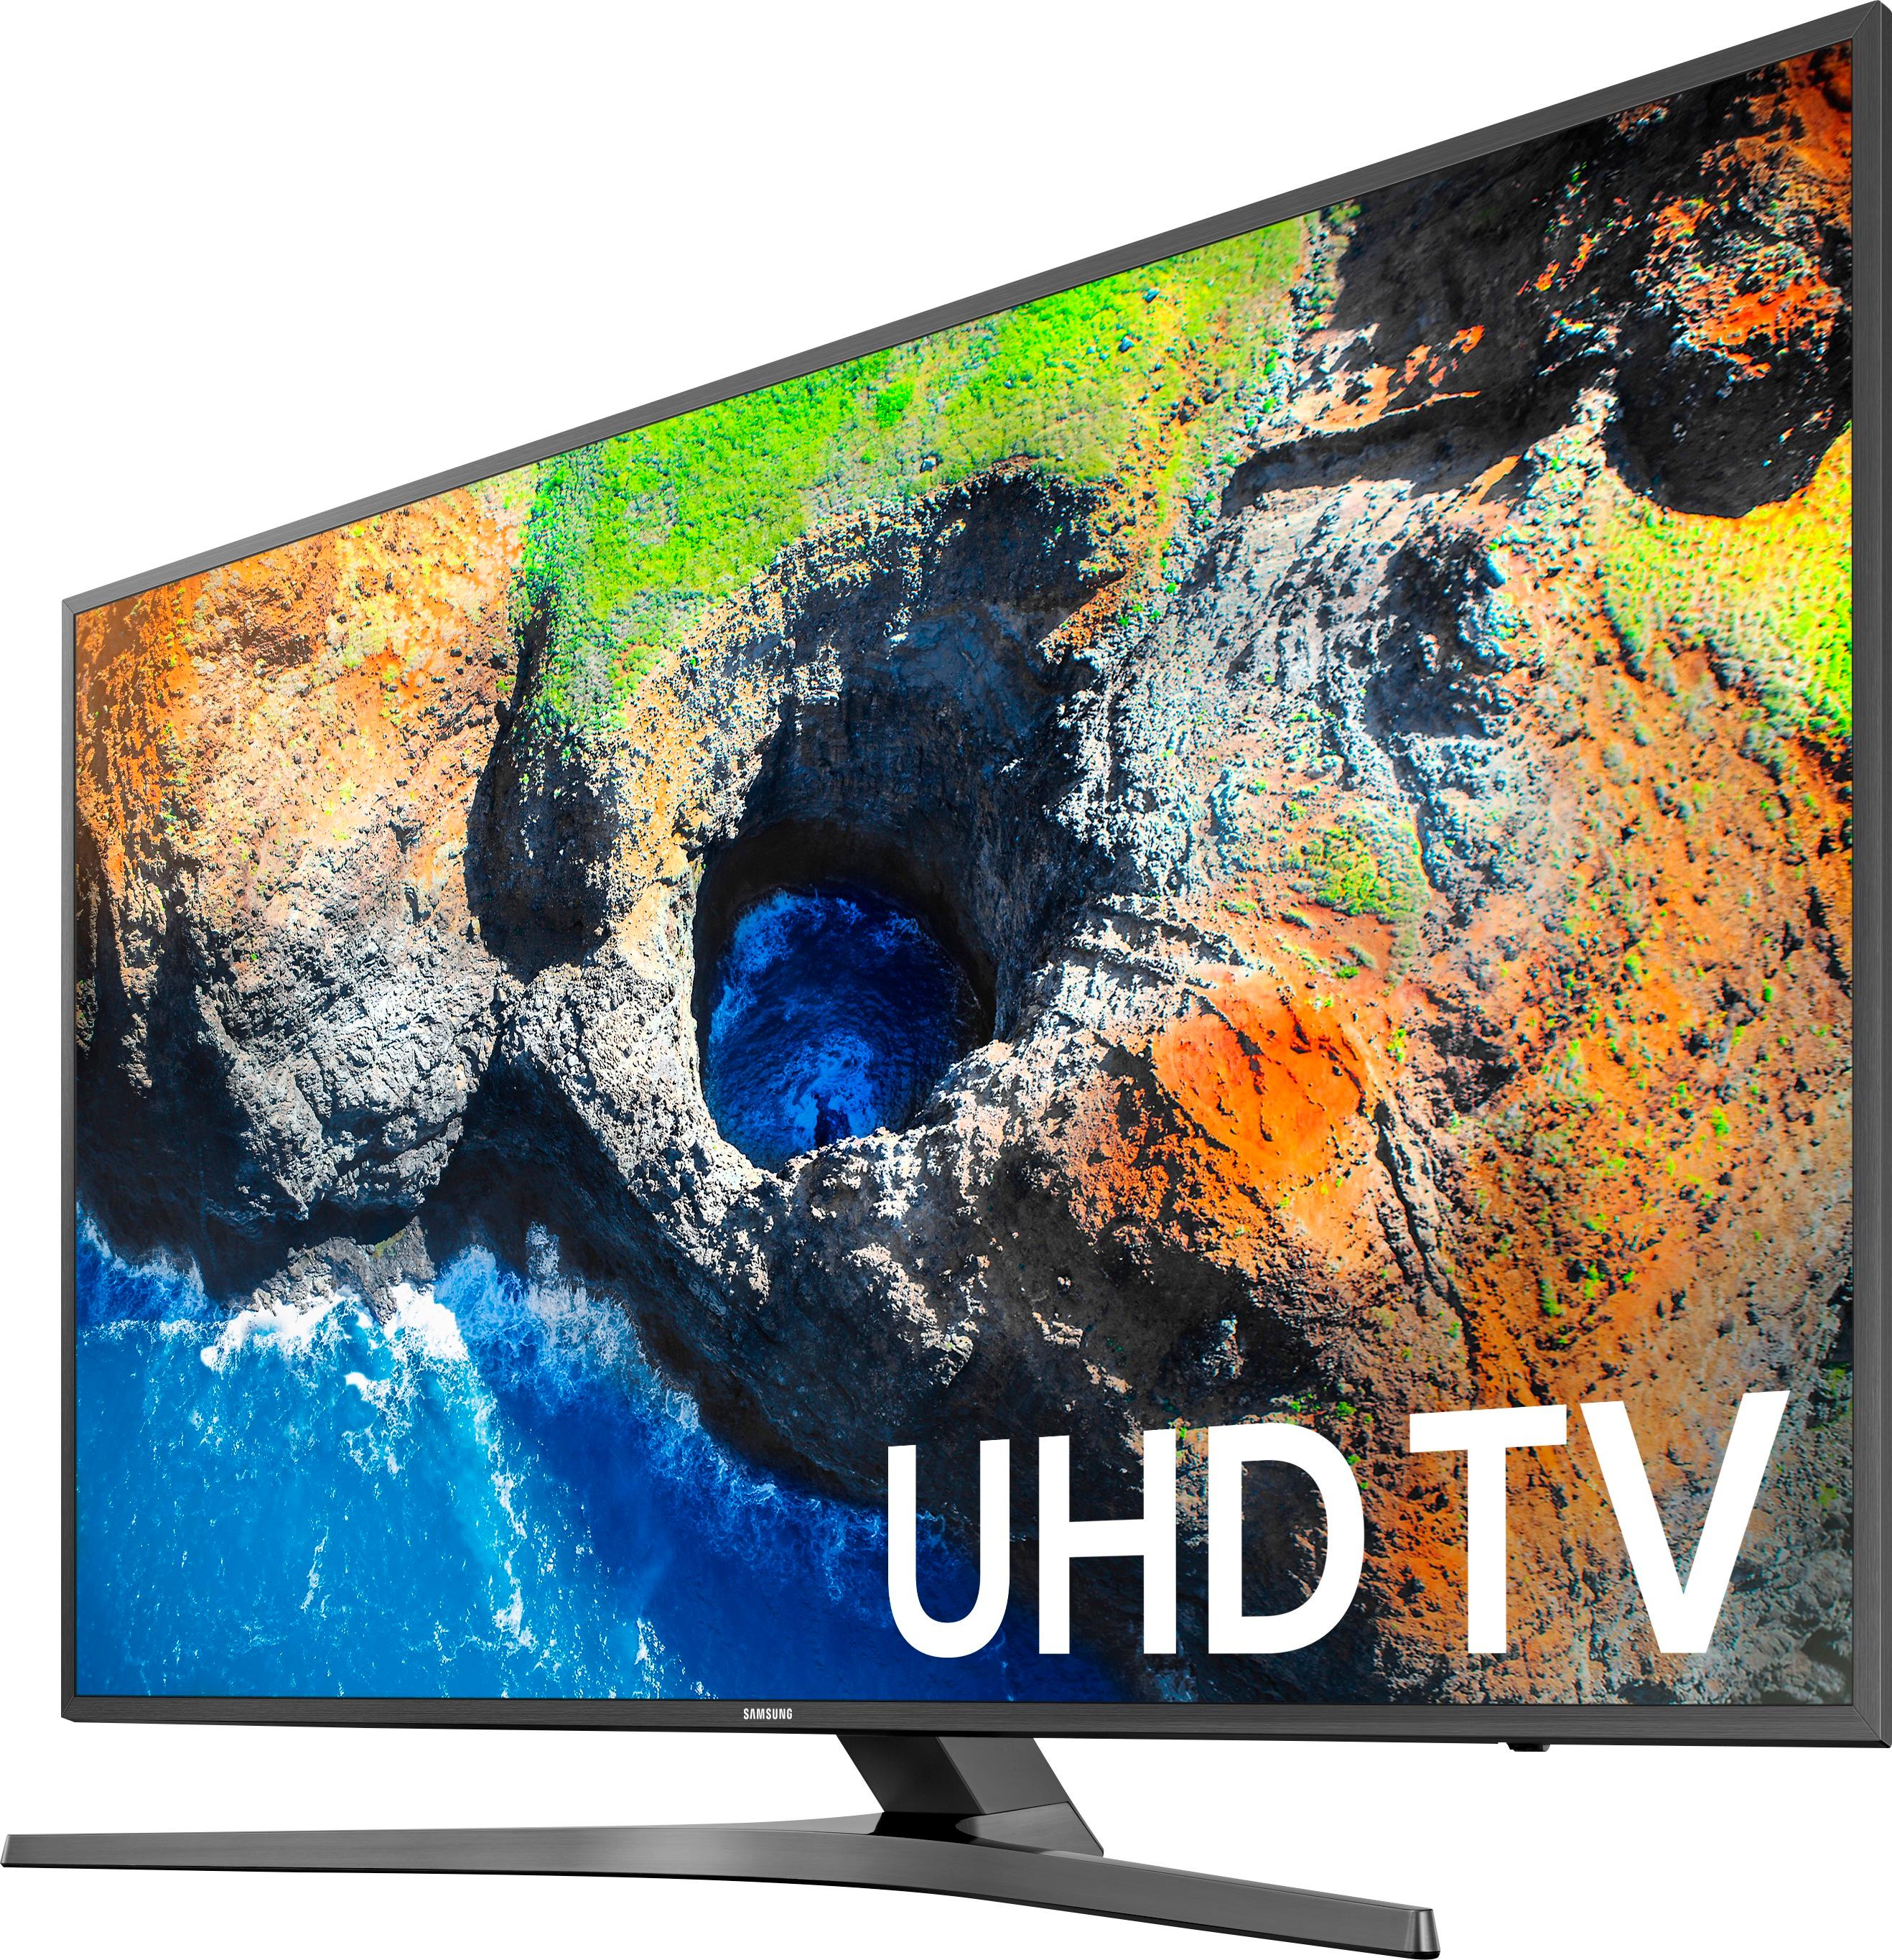 TV 4K UHD Samsung 65 pouces